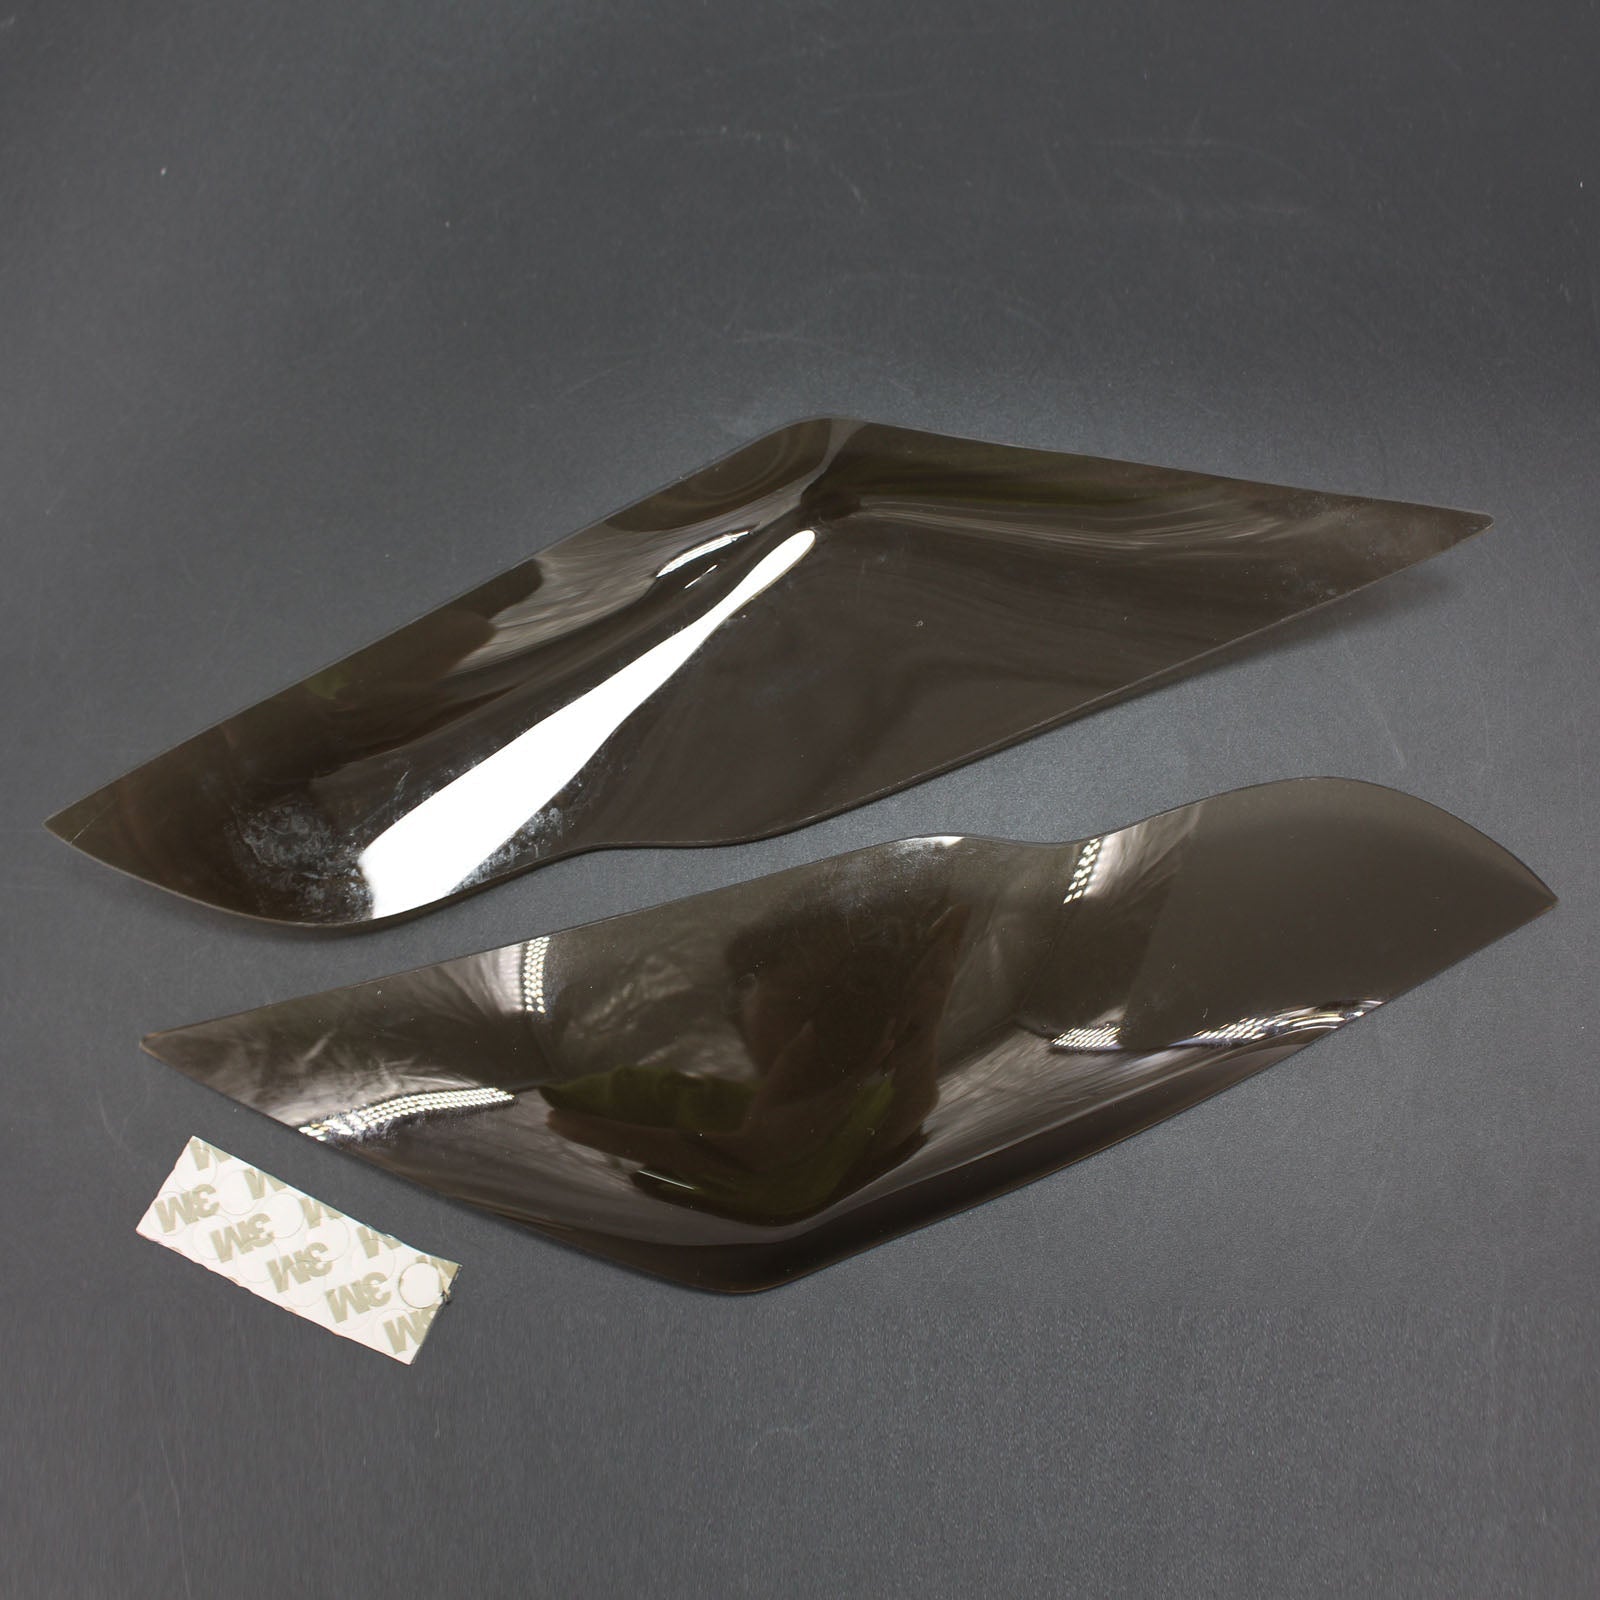 Cubierta de lente de faro delantero para Kawasaki Zx-10R Zx 10R 2011-2015 humo genérico